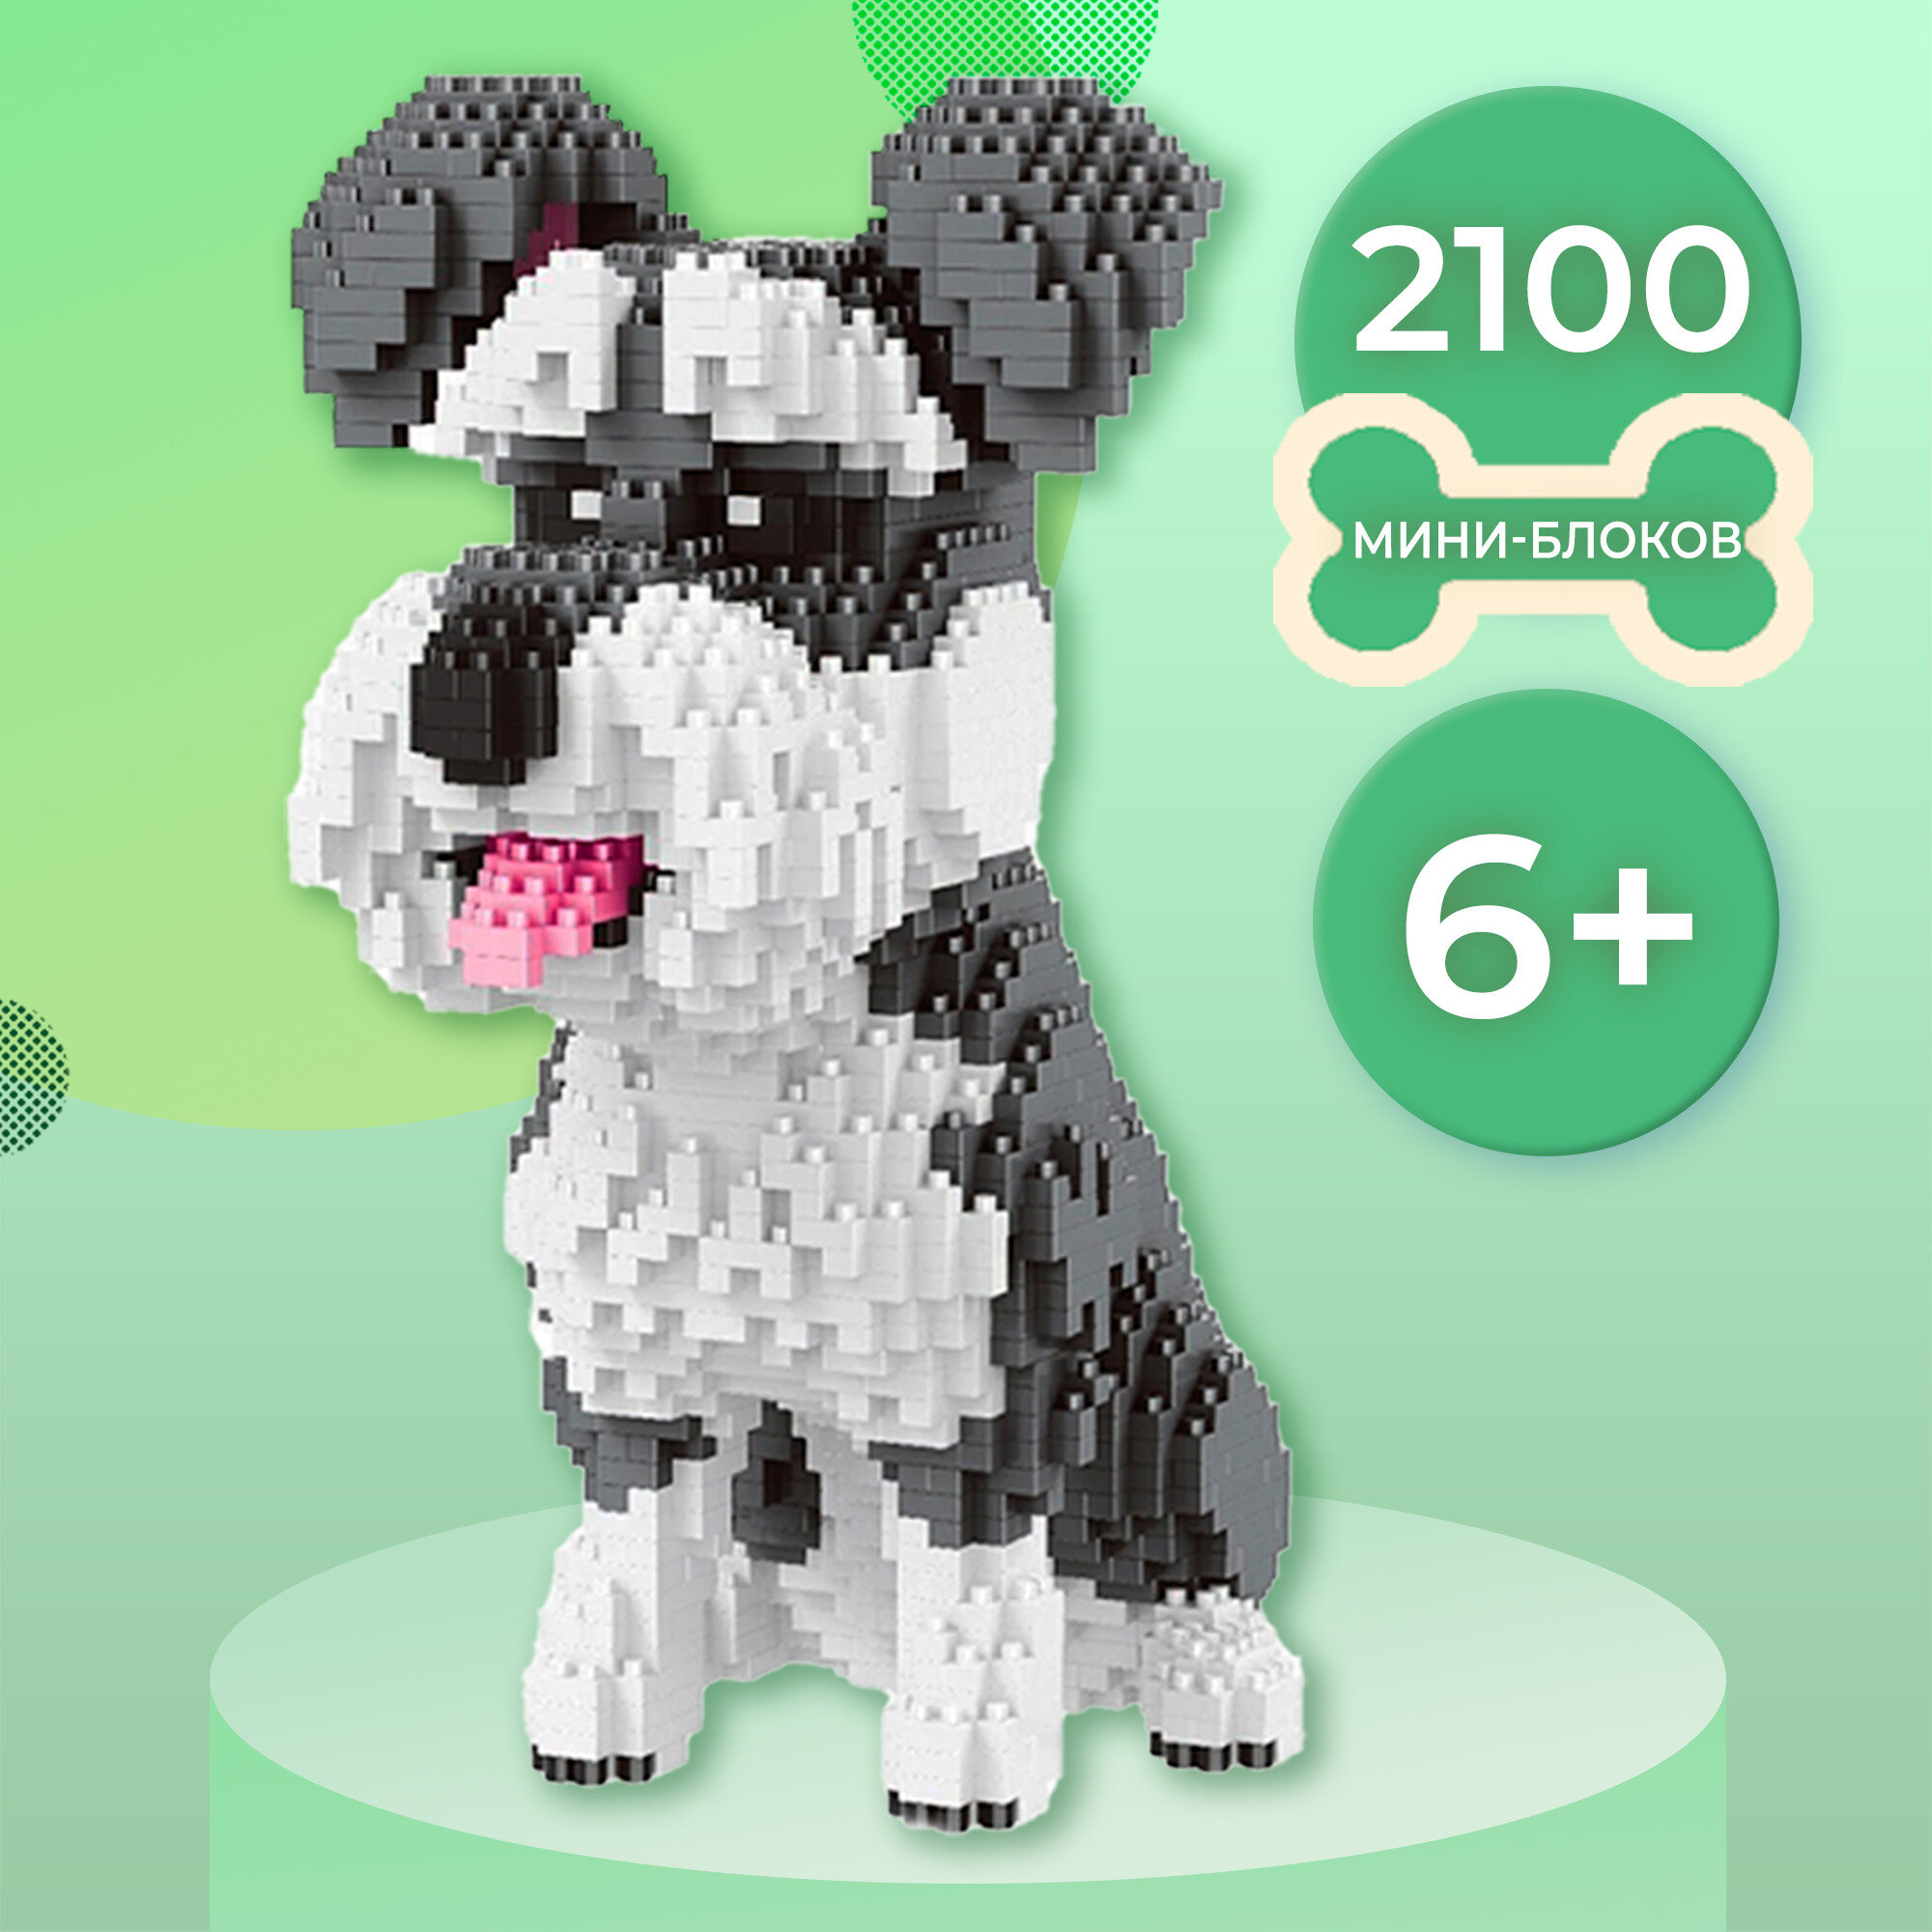 Пластиковый 3D-конструктор WiMi Шнауцер, сборная модель щенка из мини-блоков для интерьера, головоломка для взрослых и детей, 2100 деталей